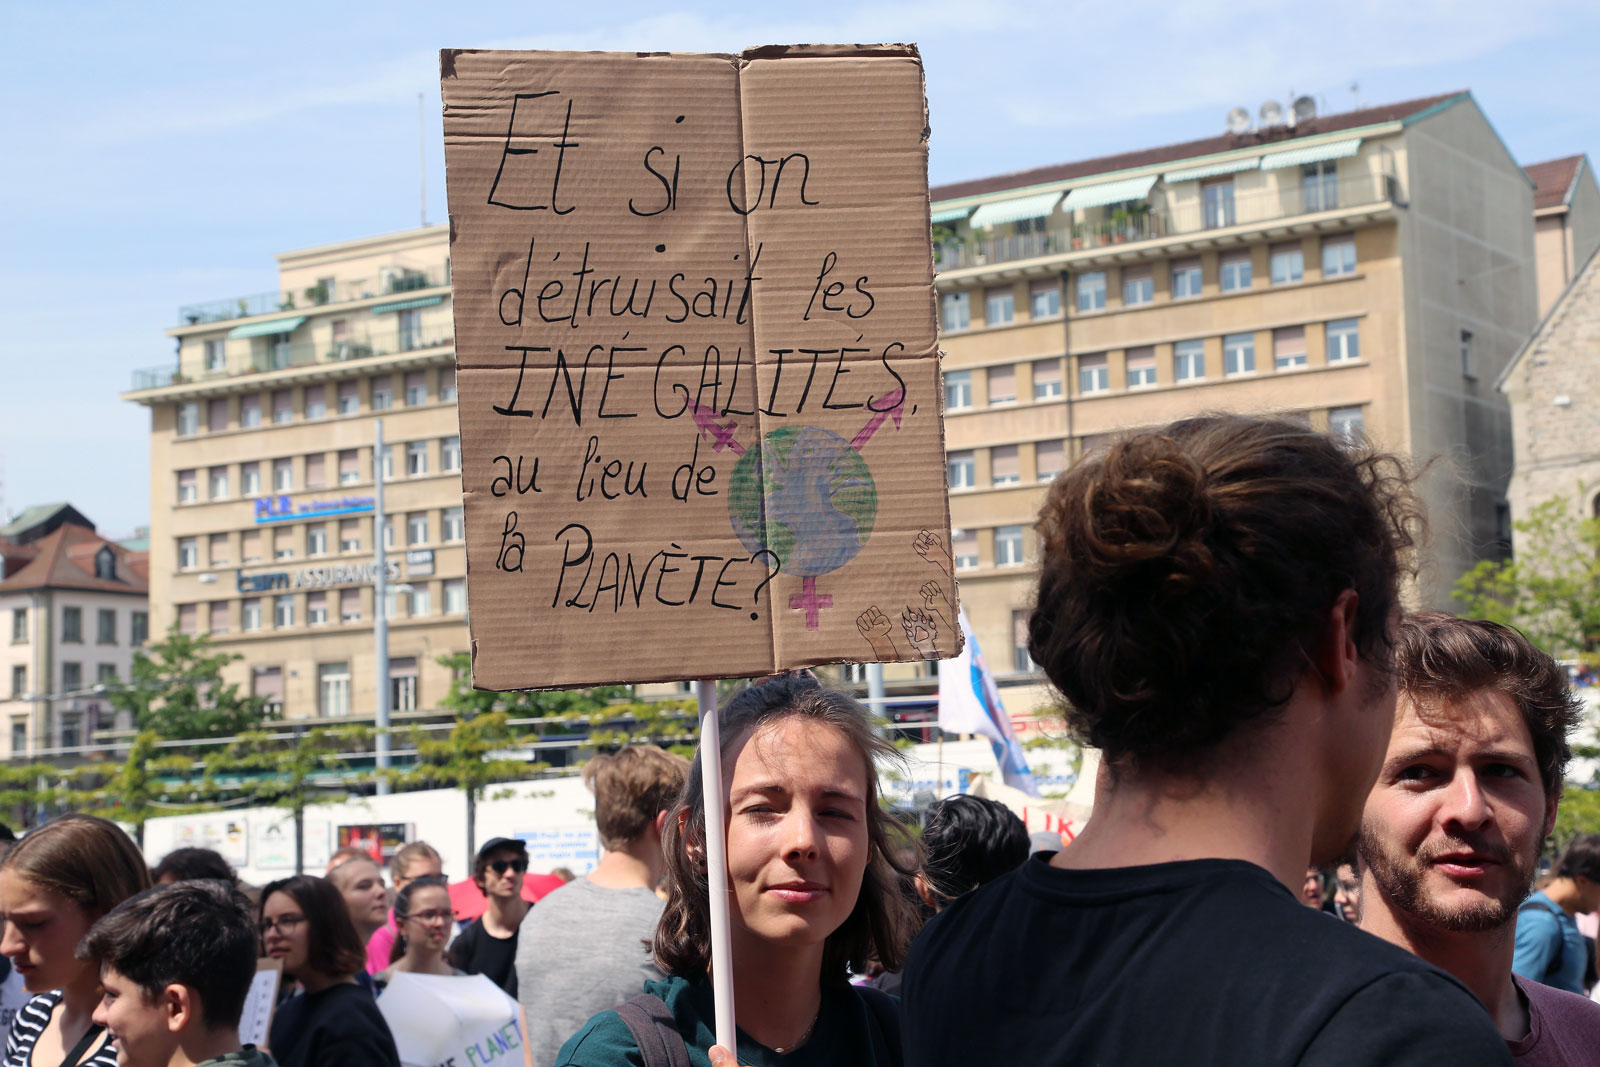 A Lausanne, une pancarte sur laquelle on lit: Et si on détruisait les inégalités au lieu de la planète?